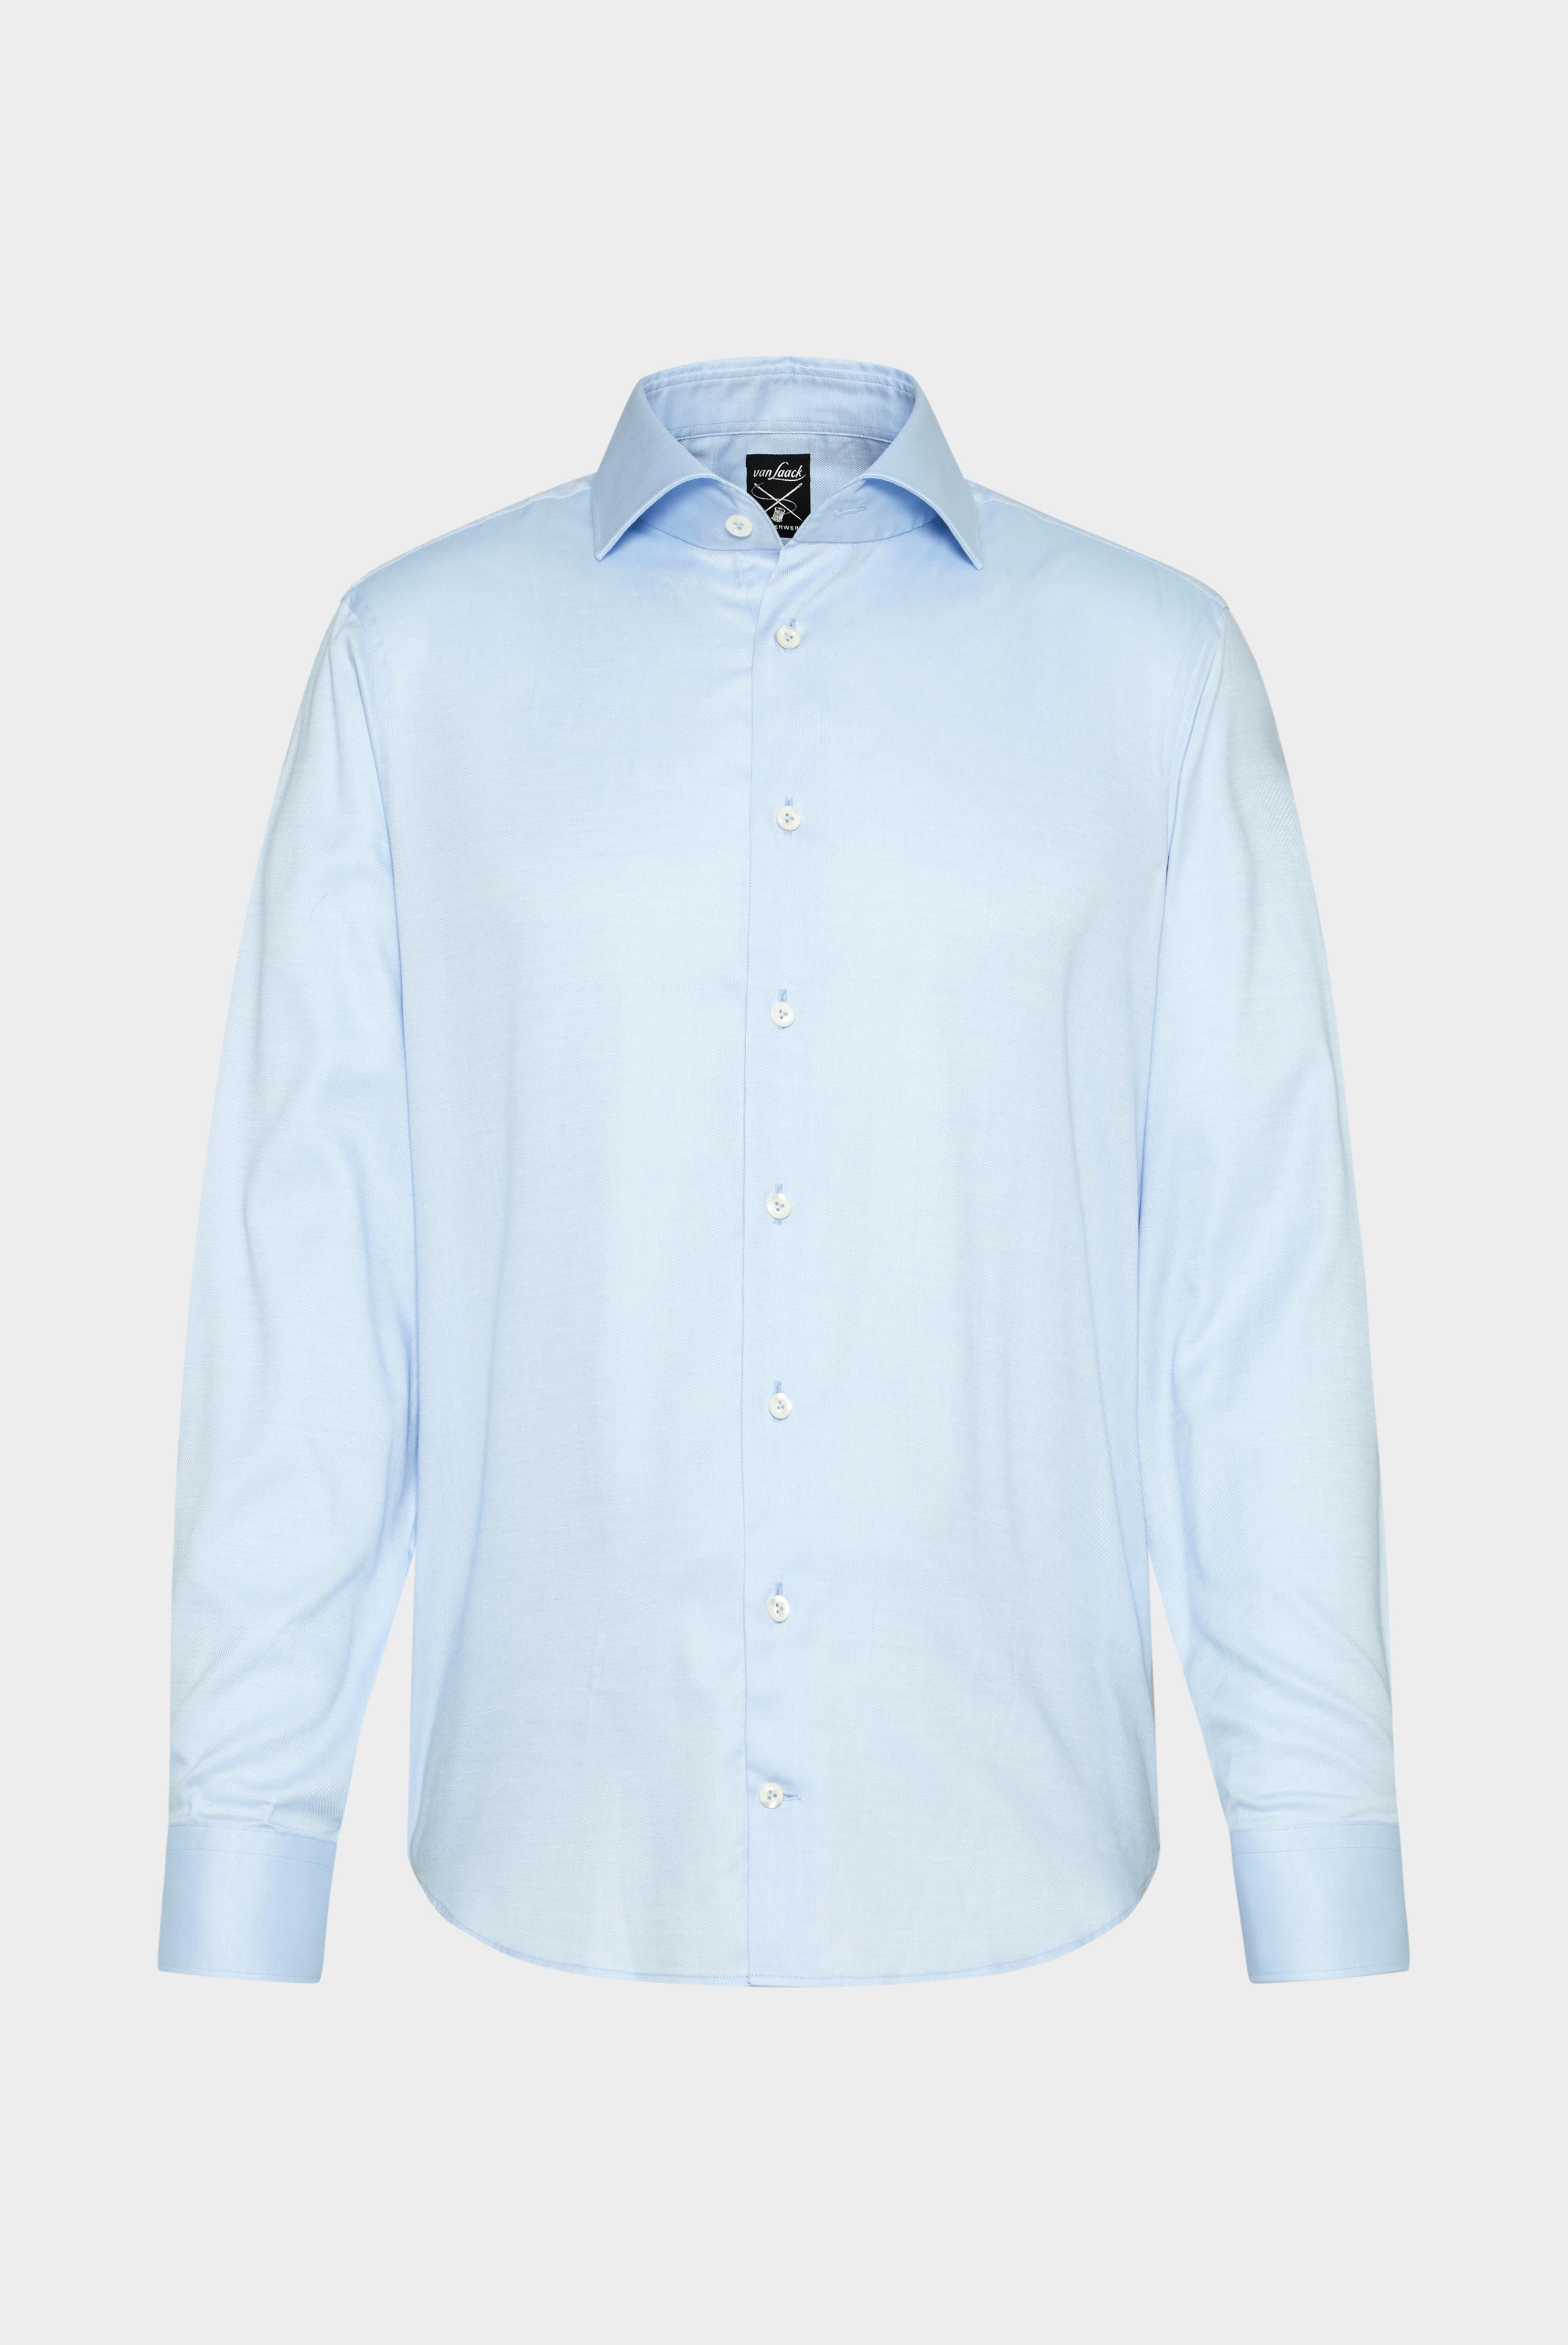 Business Shirts+Structured Plain Shirt, Natté/Basket Weave+20.2020.AV.130872.720.37